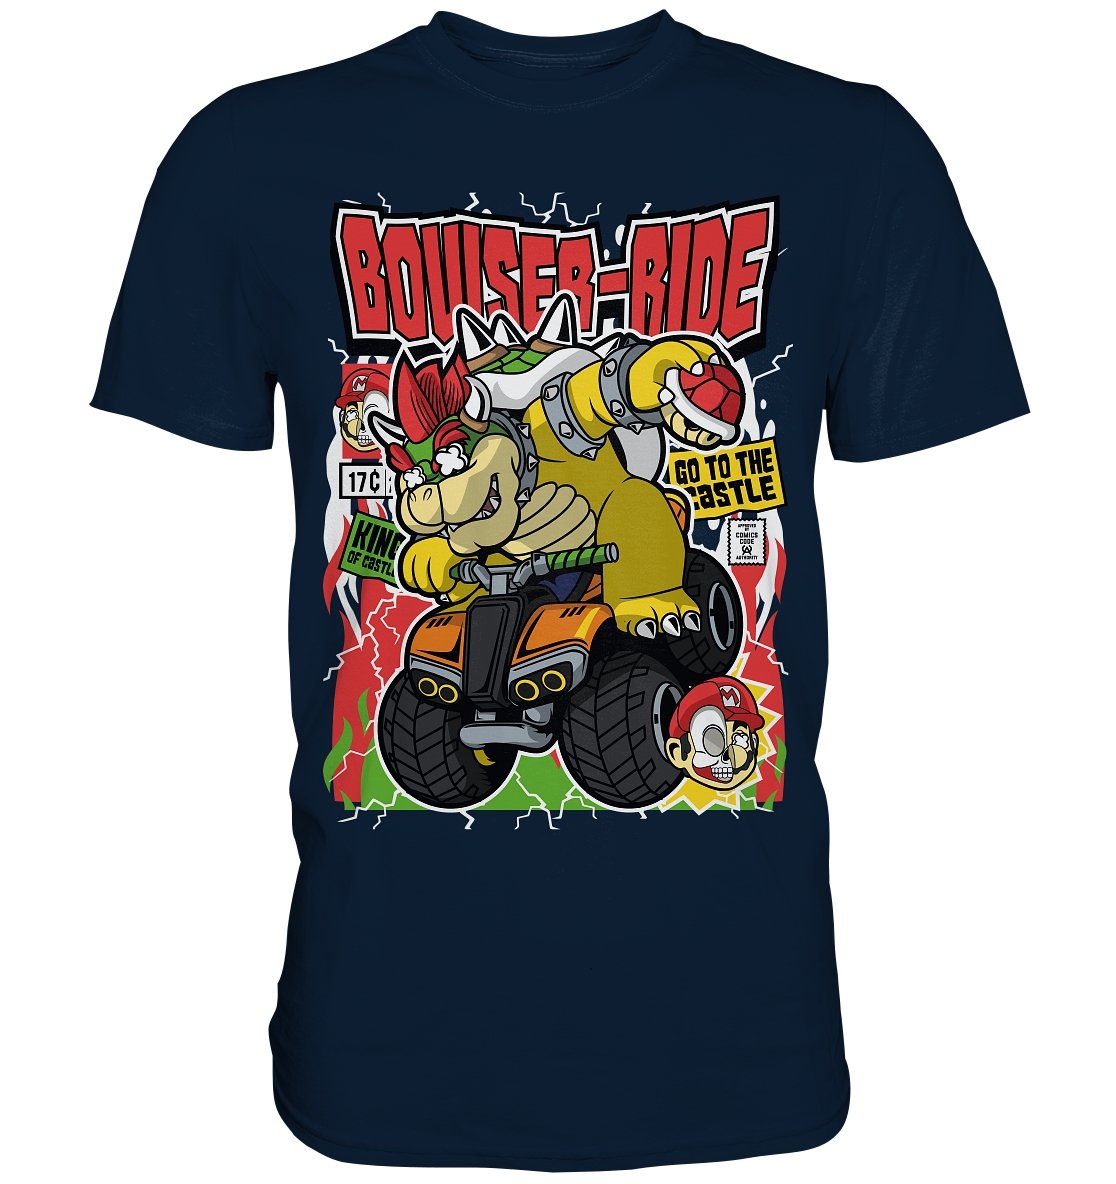 Bowser Ride Comic - Premium Shirt - BINYA